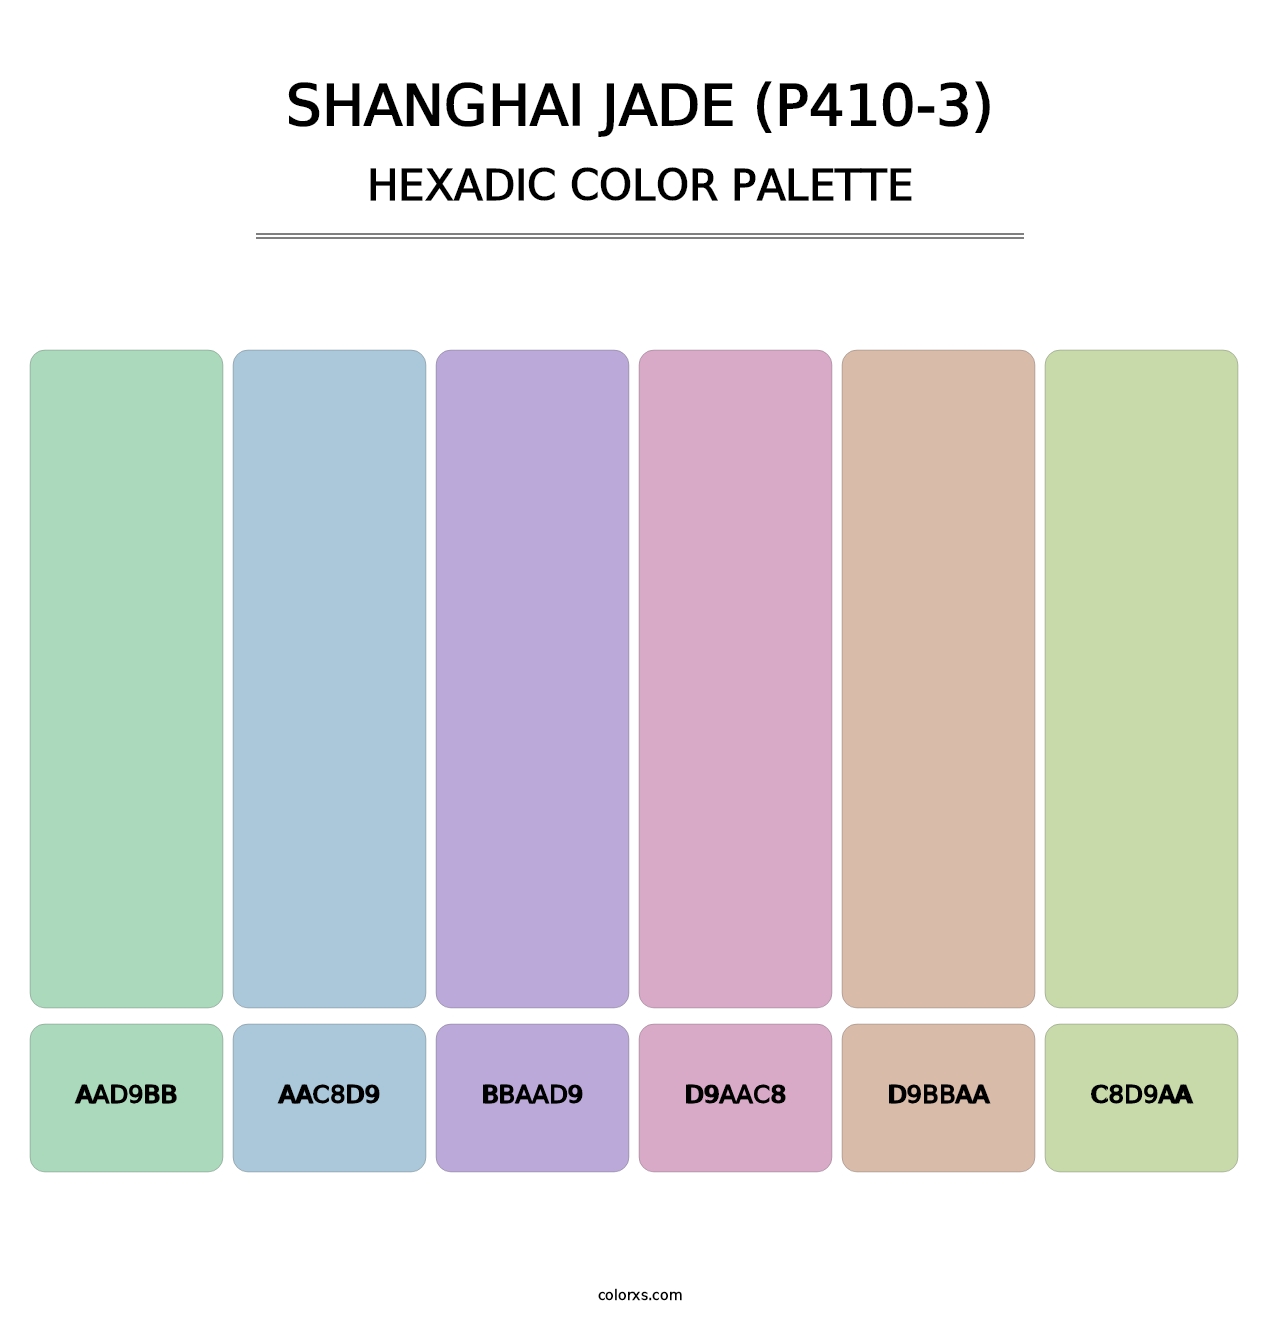 Shanghai Jade (P410-3) - Hexadic Color Palette